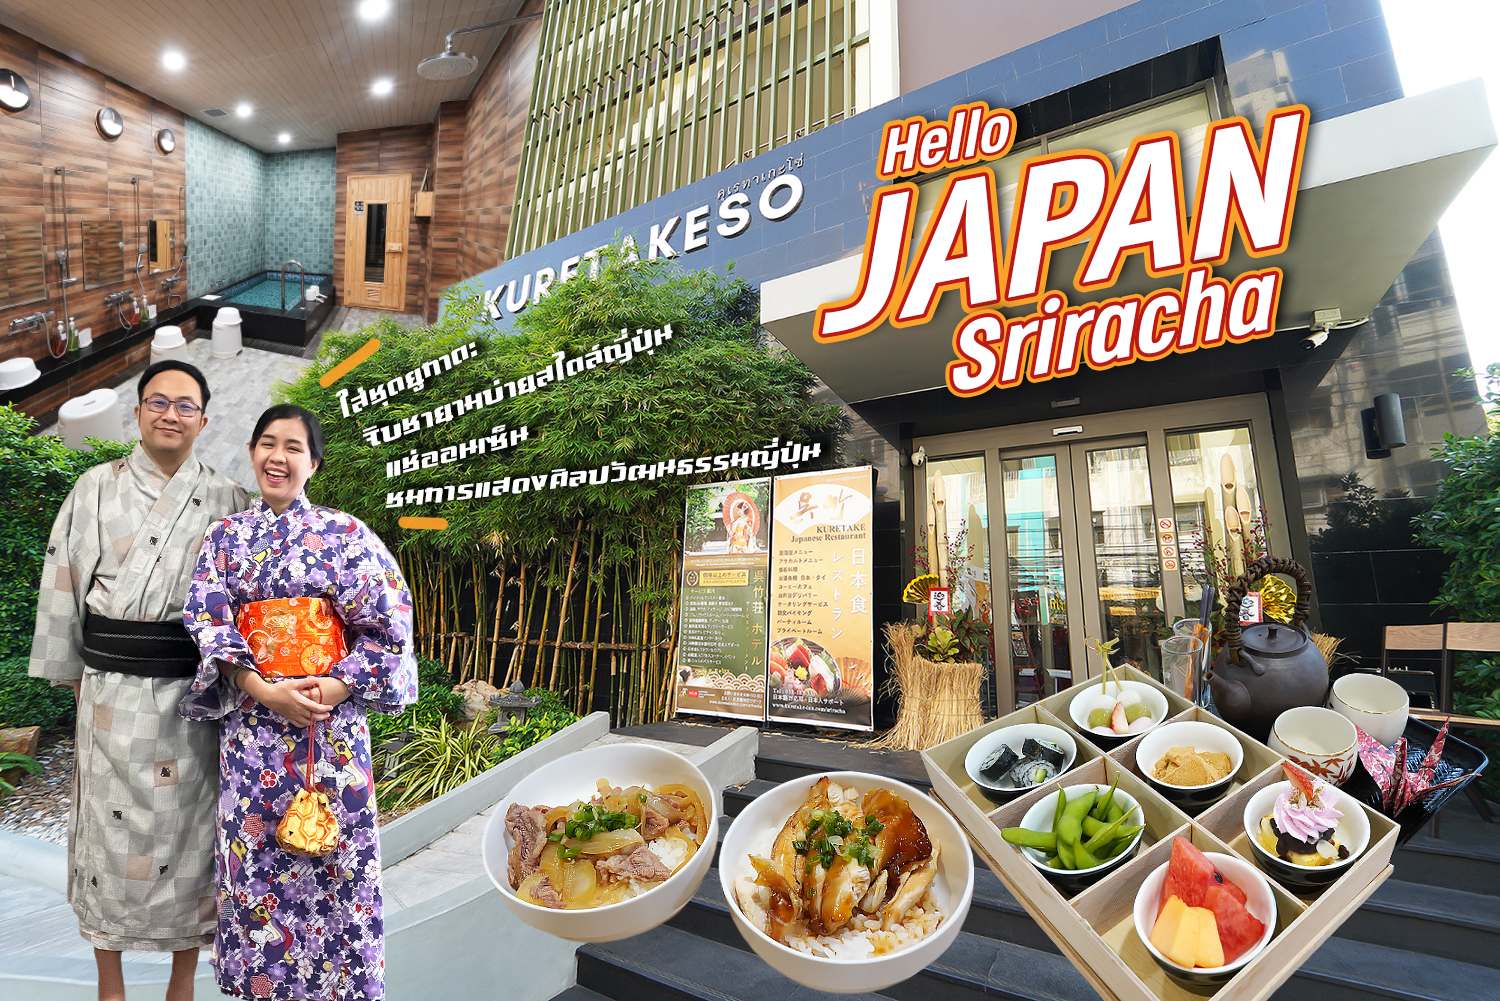 เที่ยวญี่ปุ่น @ศรีราชา (Hotel Kuretakeso Sriracha) ใส่ชุดยูกาตะ จิบชายามบ่ายสไตล์ญี่ปุ่น ชมการแสดงศิลปวัฒนธรรมญี่ปุ่น แช่ออนเซ็น… - ชิม ช็อป แชะ แวะเที่ยวไปกับเรา www.Hello2Day.com เว็บไซต์ที่รวมรีวิวร้านอาหาร สถานที่ท่องเที่ยว โรงแรม สายการบิน รถเช่า ...